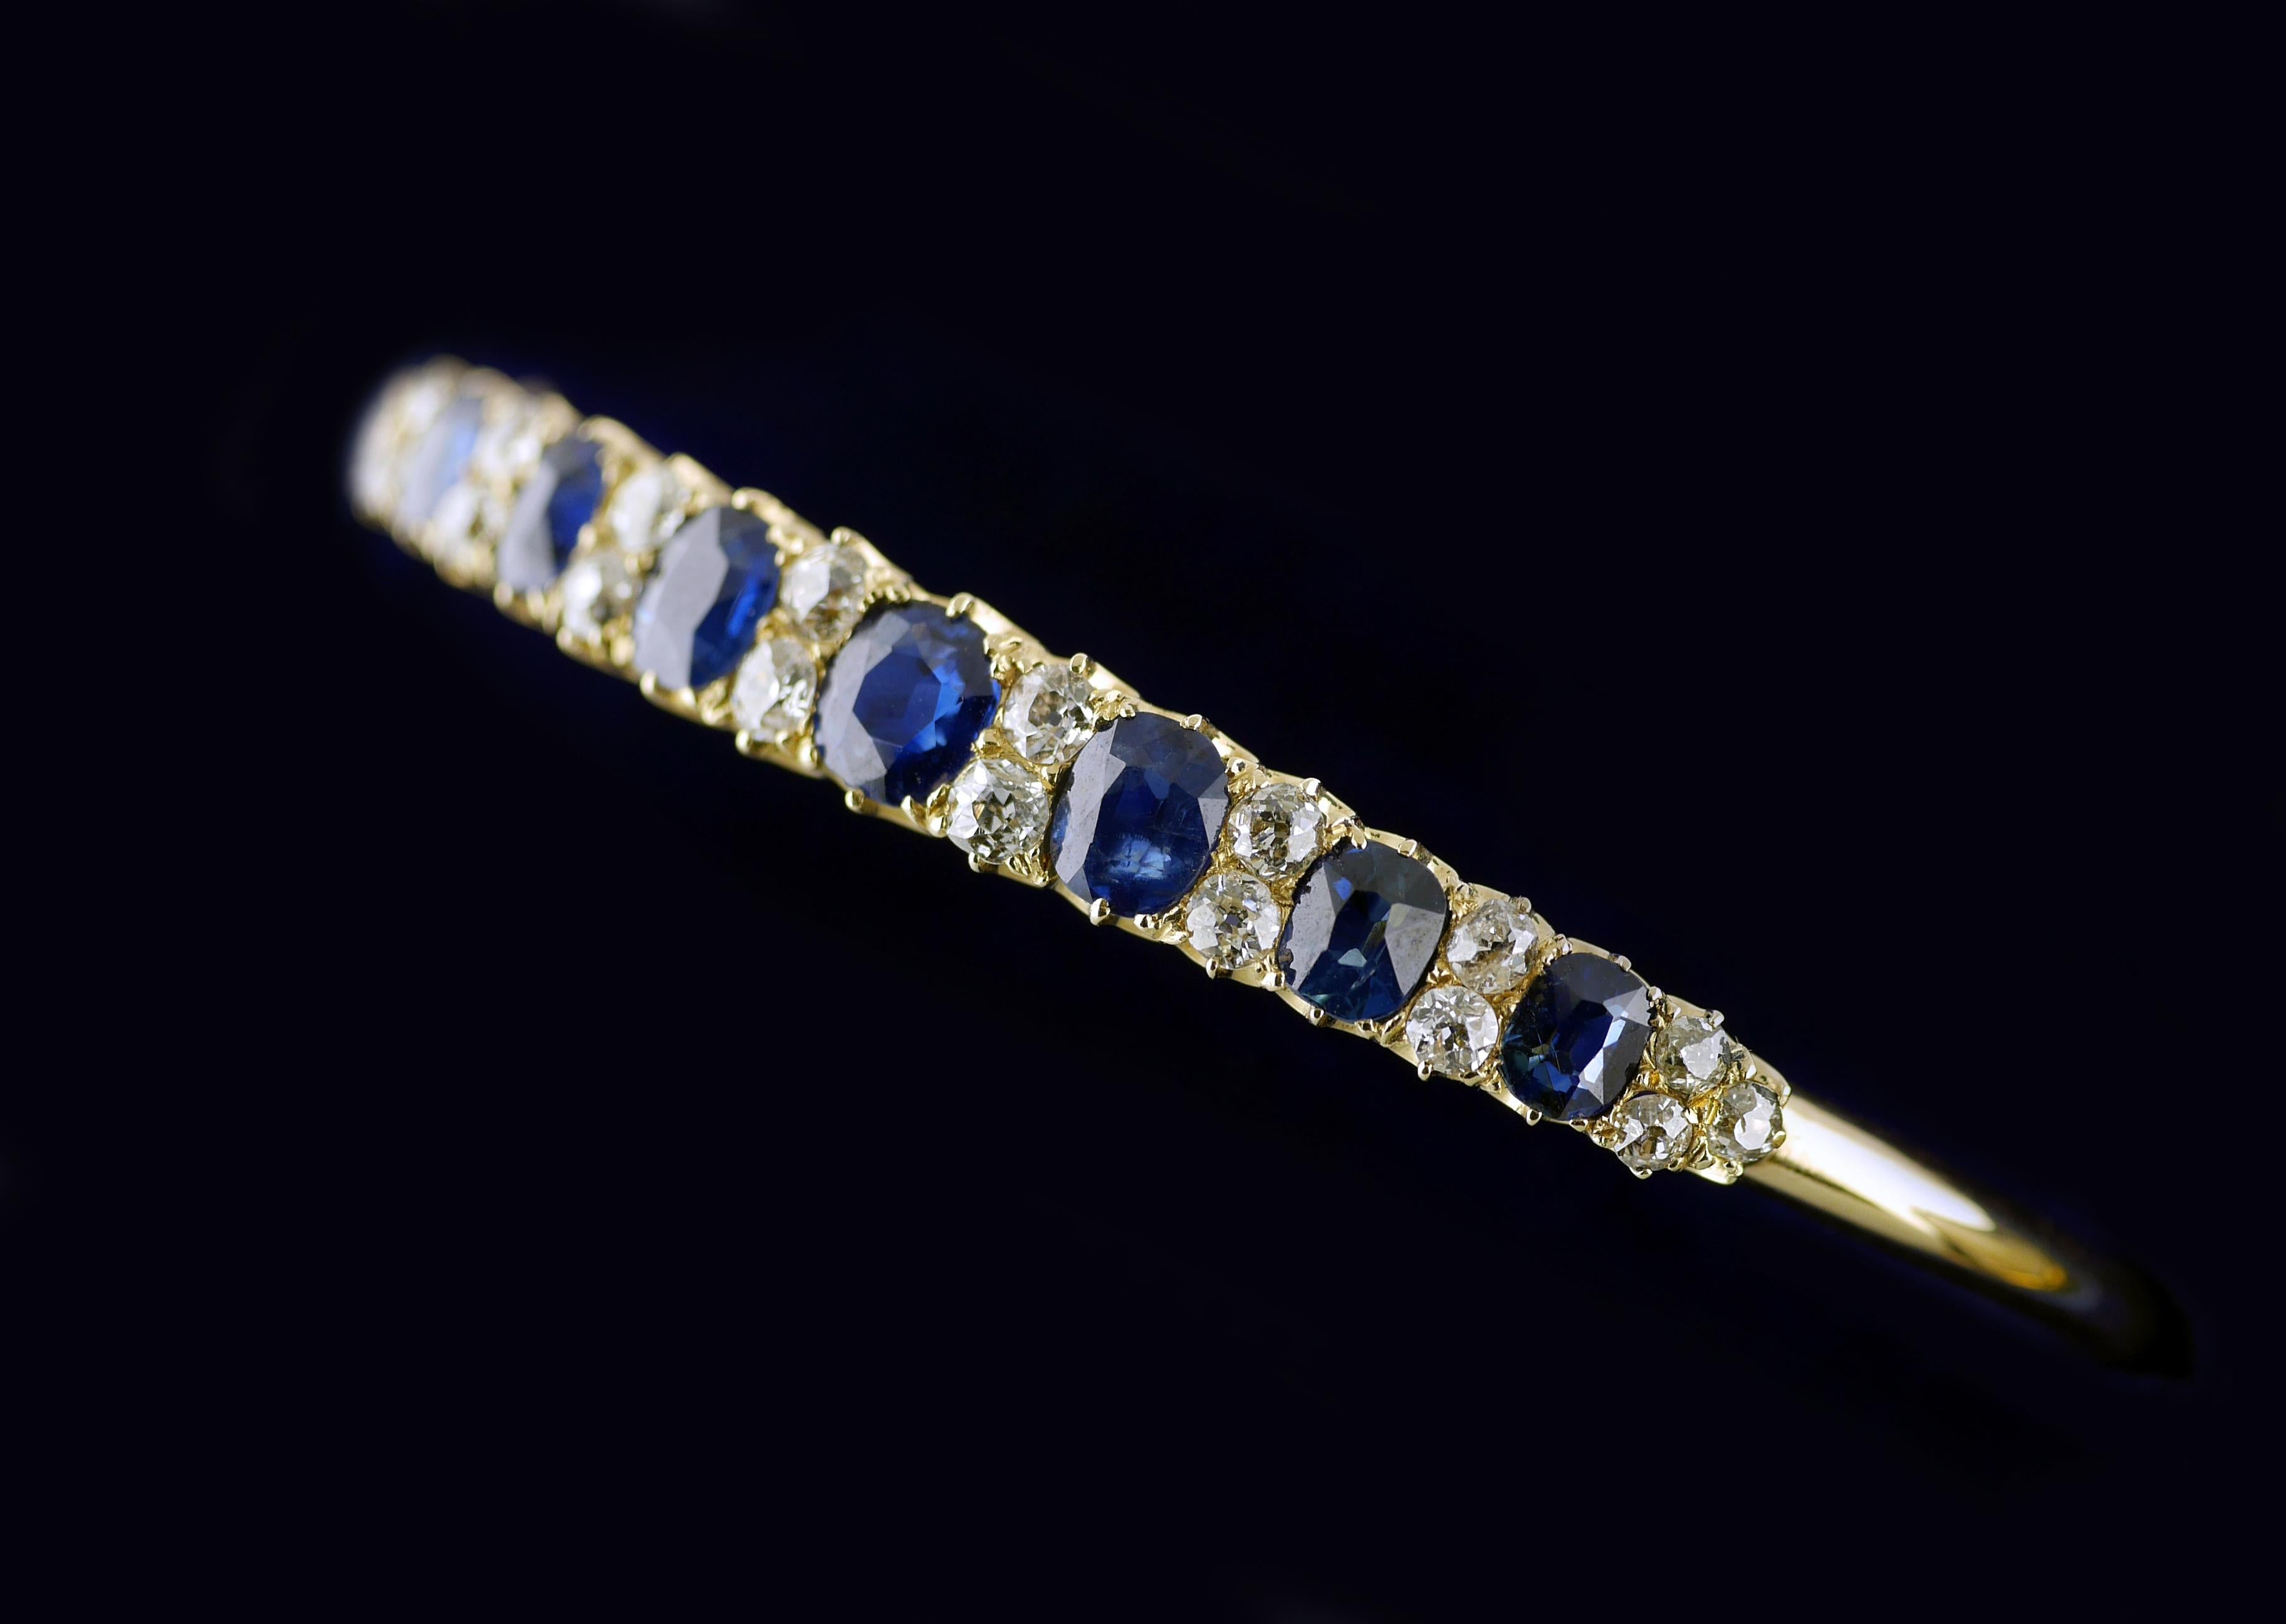 Sieben natürliche, unbehandelte blaue Saphire in einem viktorianischen Armreif mit weißen Diamanten aus der Zeit um 1860.

Armreif aus 18 Karat Gelbgold, besetzt mit 7 sehr gut aufeinander abgestimmten, natürlichen, unbehandelten Saphiren mit einem